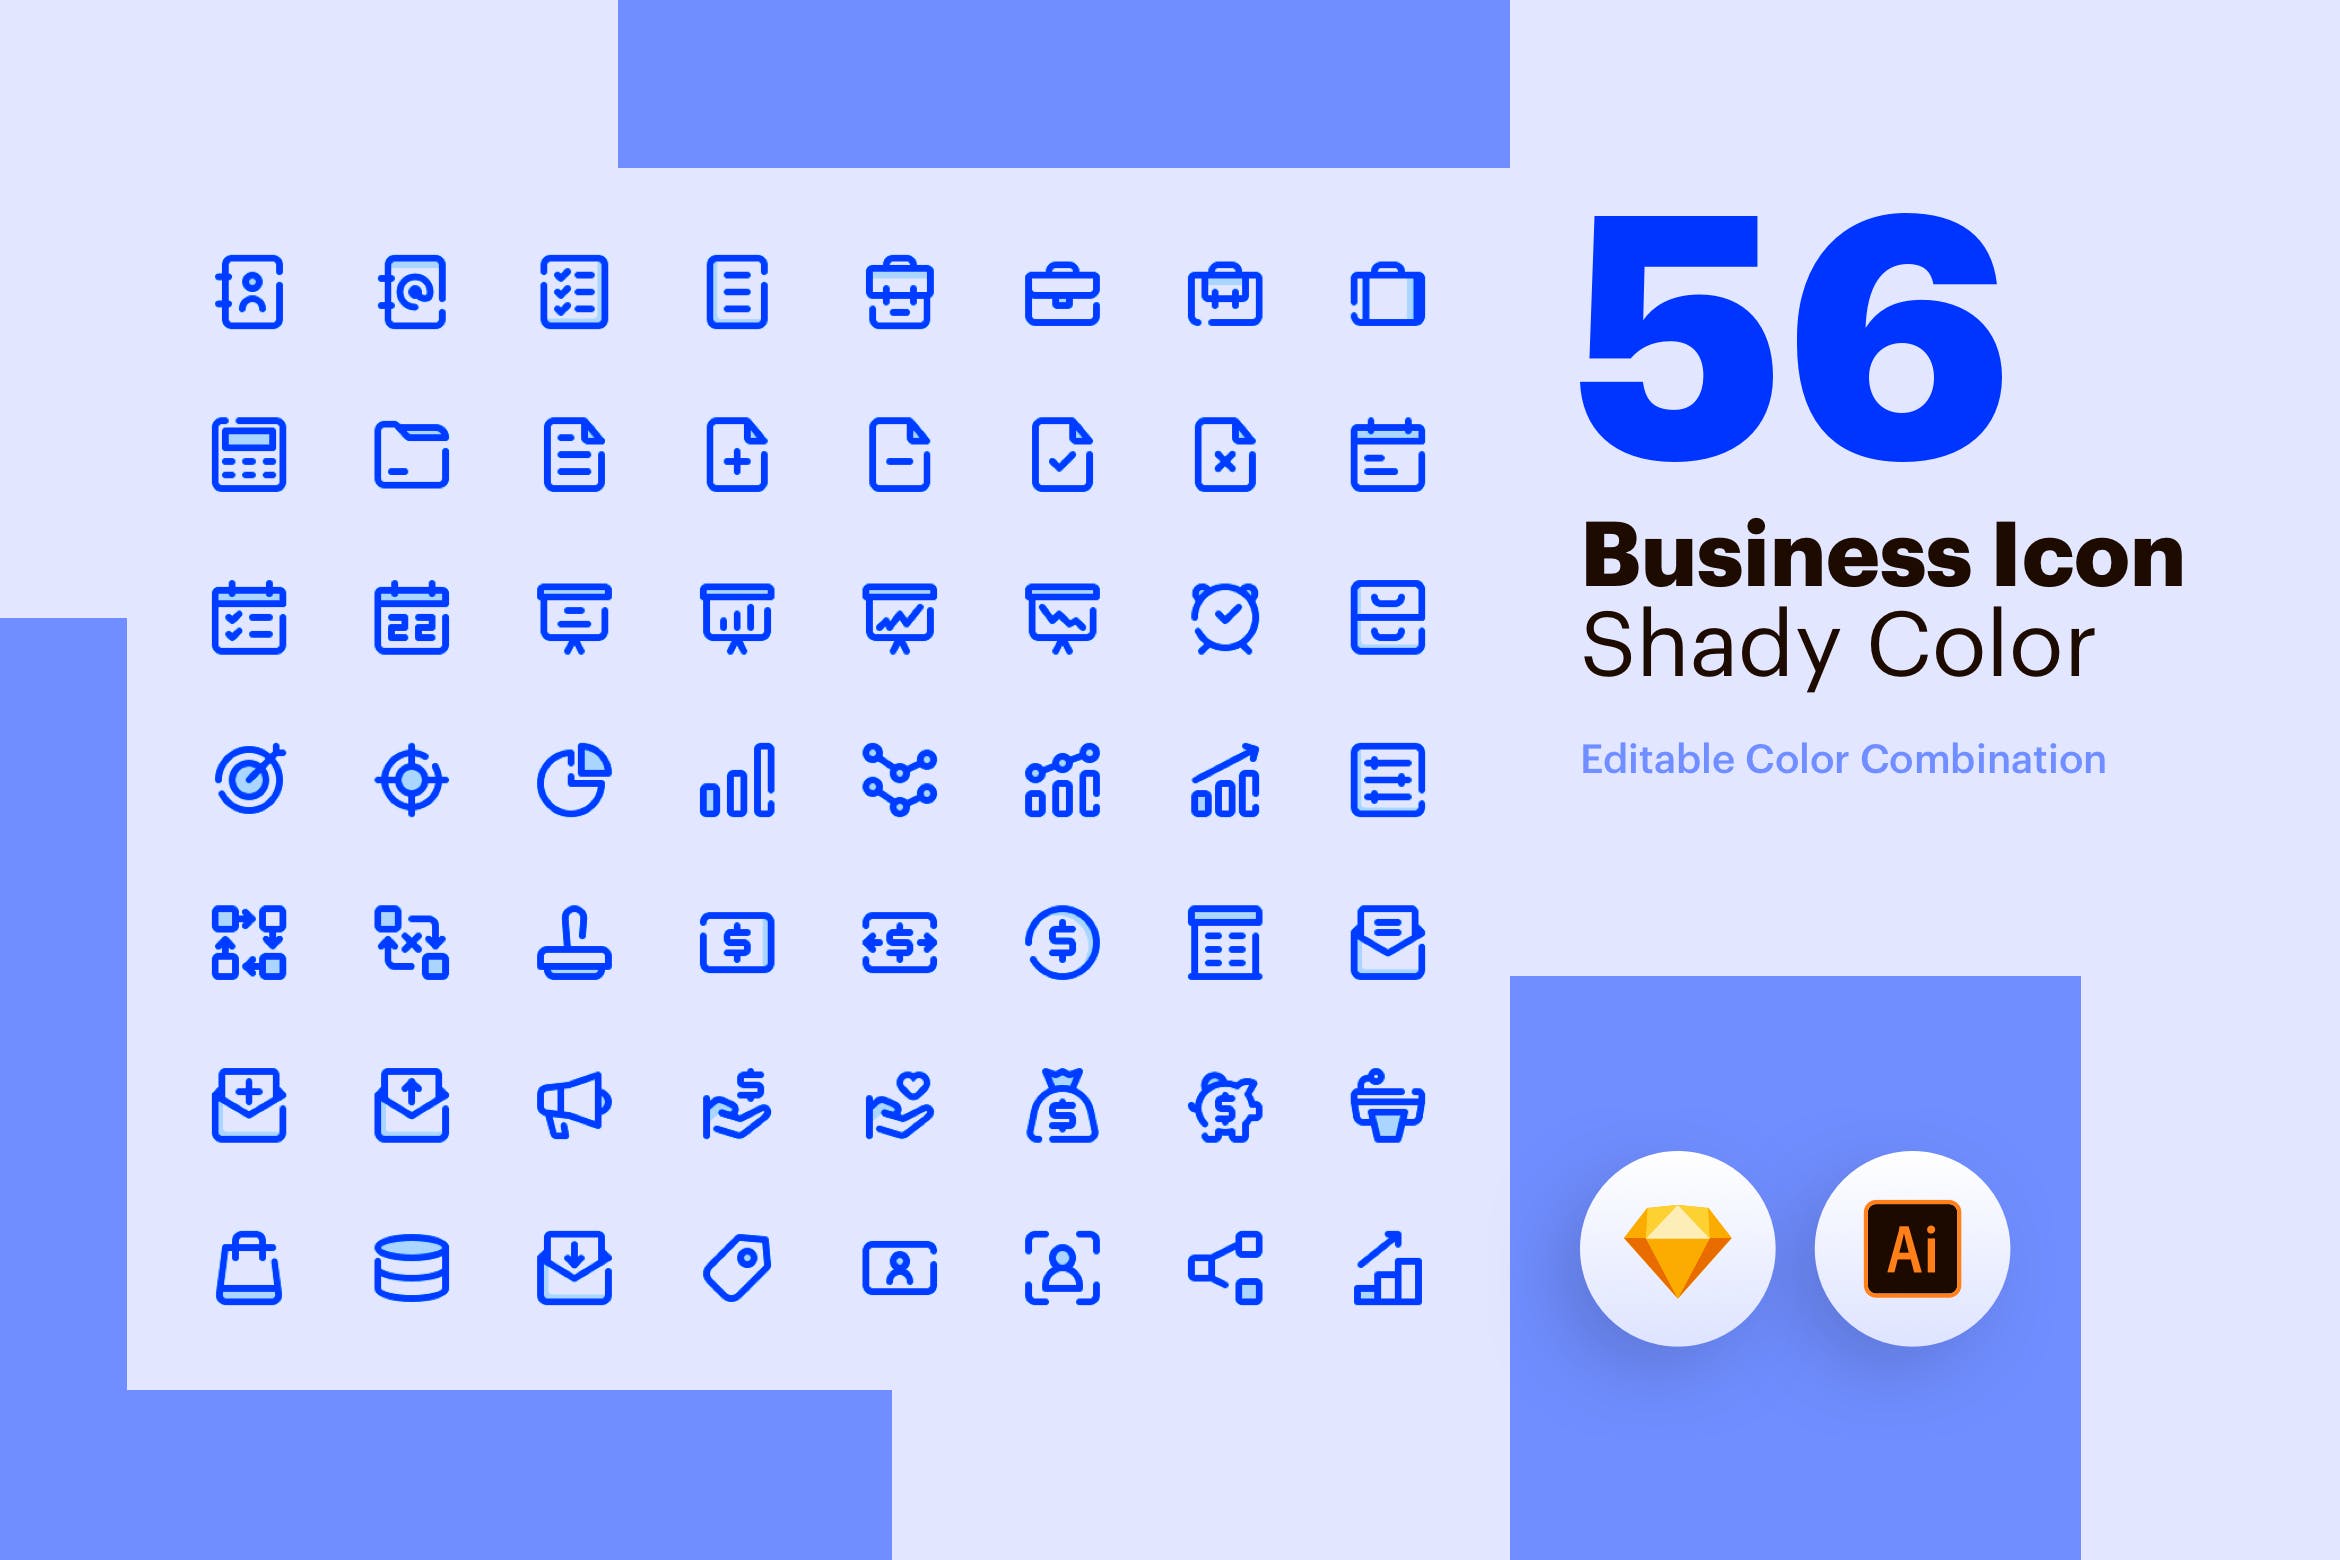 56枚商业主题彩色阴影矢量16设计素材网精选图标素材包 Business Icon – Shady Color插图